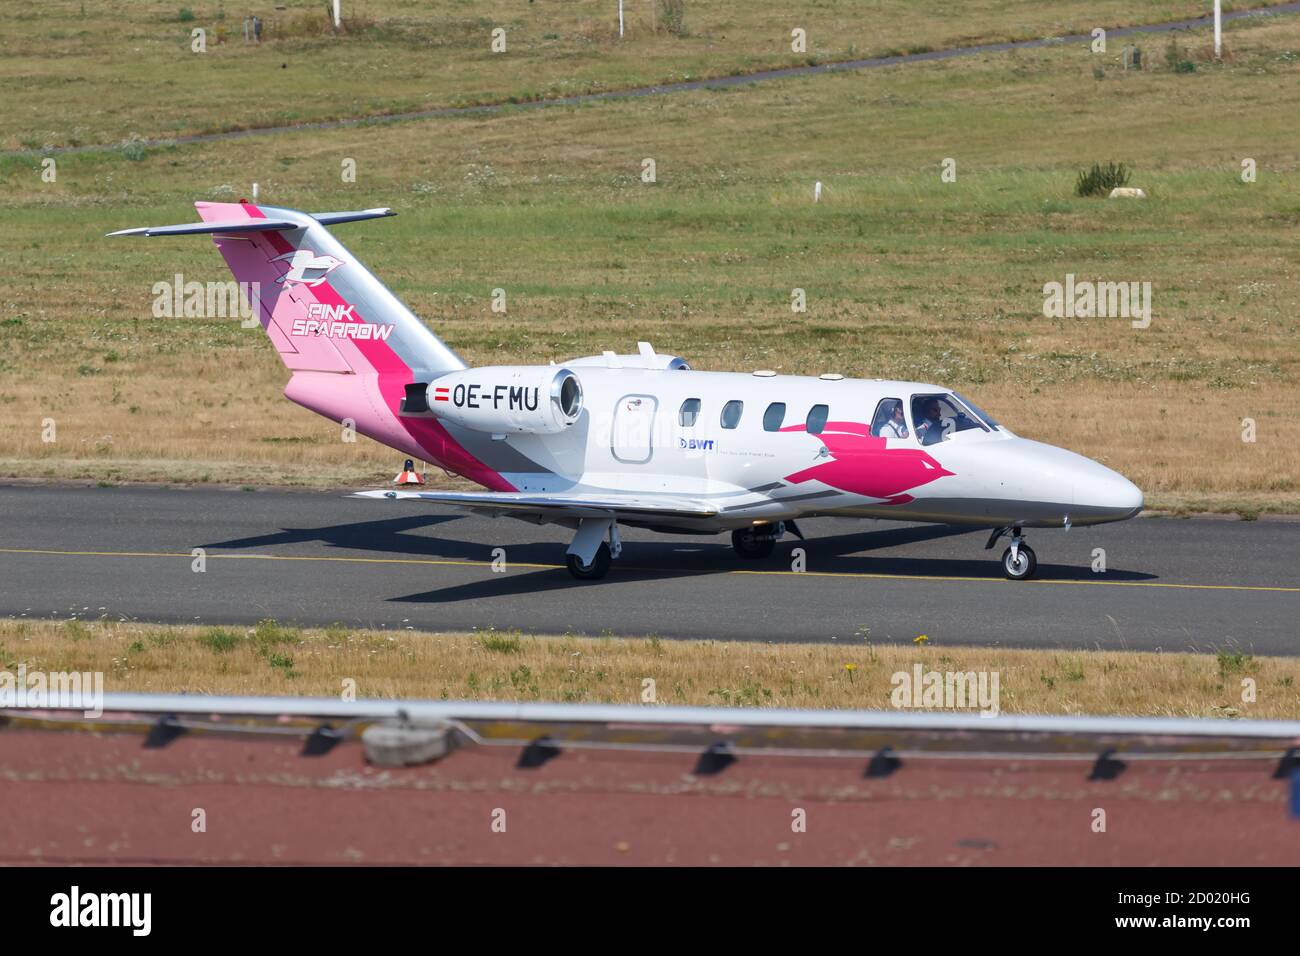 Dortmund, Deutschland - 10. August 2020: Pink Sparrow Cessna 525 CitationJet 1 Flugzeug am Flughafen Dortmund in Deutschland. Stockfoto